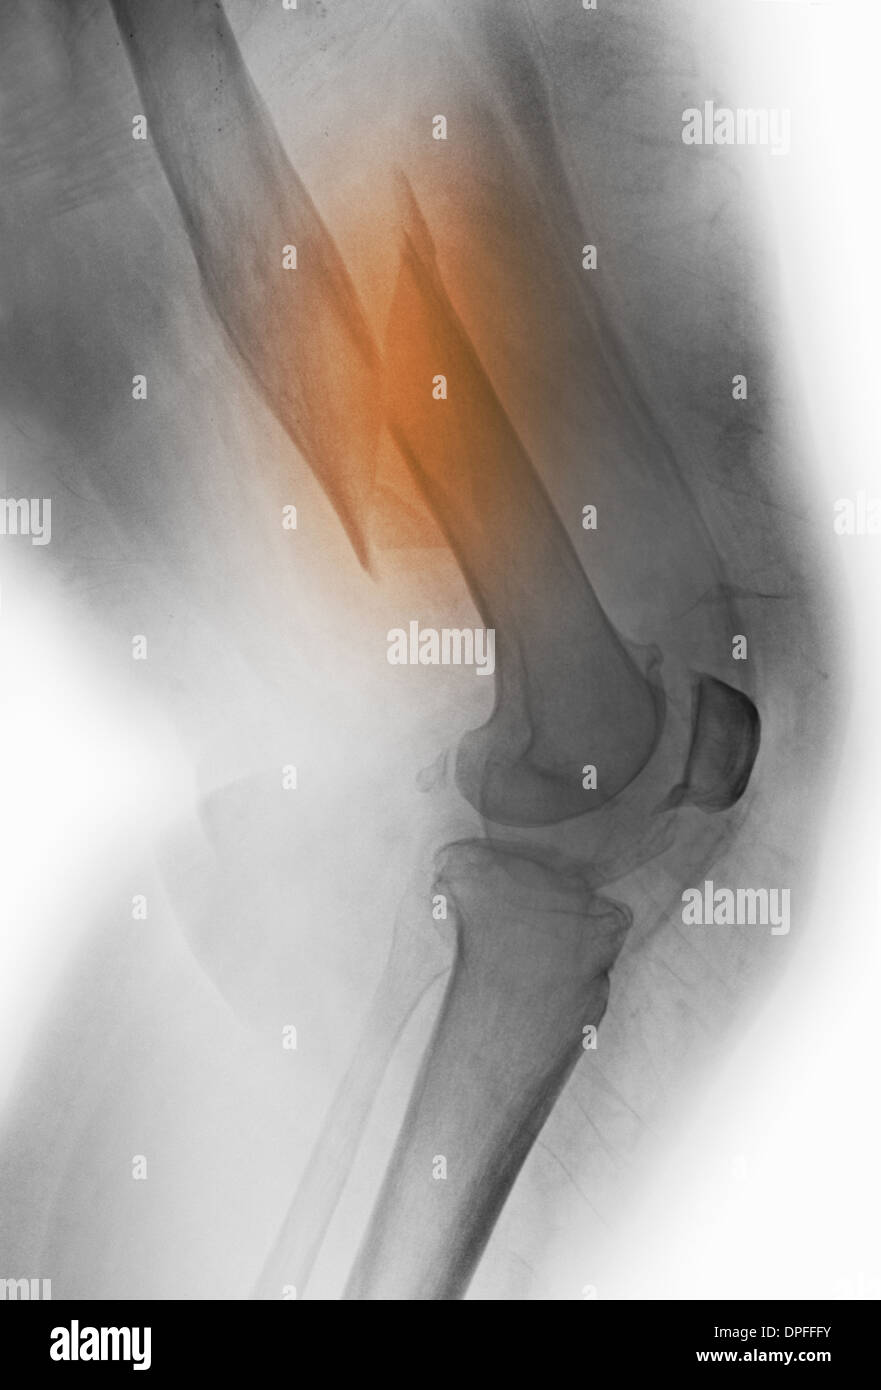 Raggi x di una frattura del femore Foto Stock